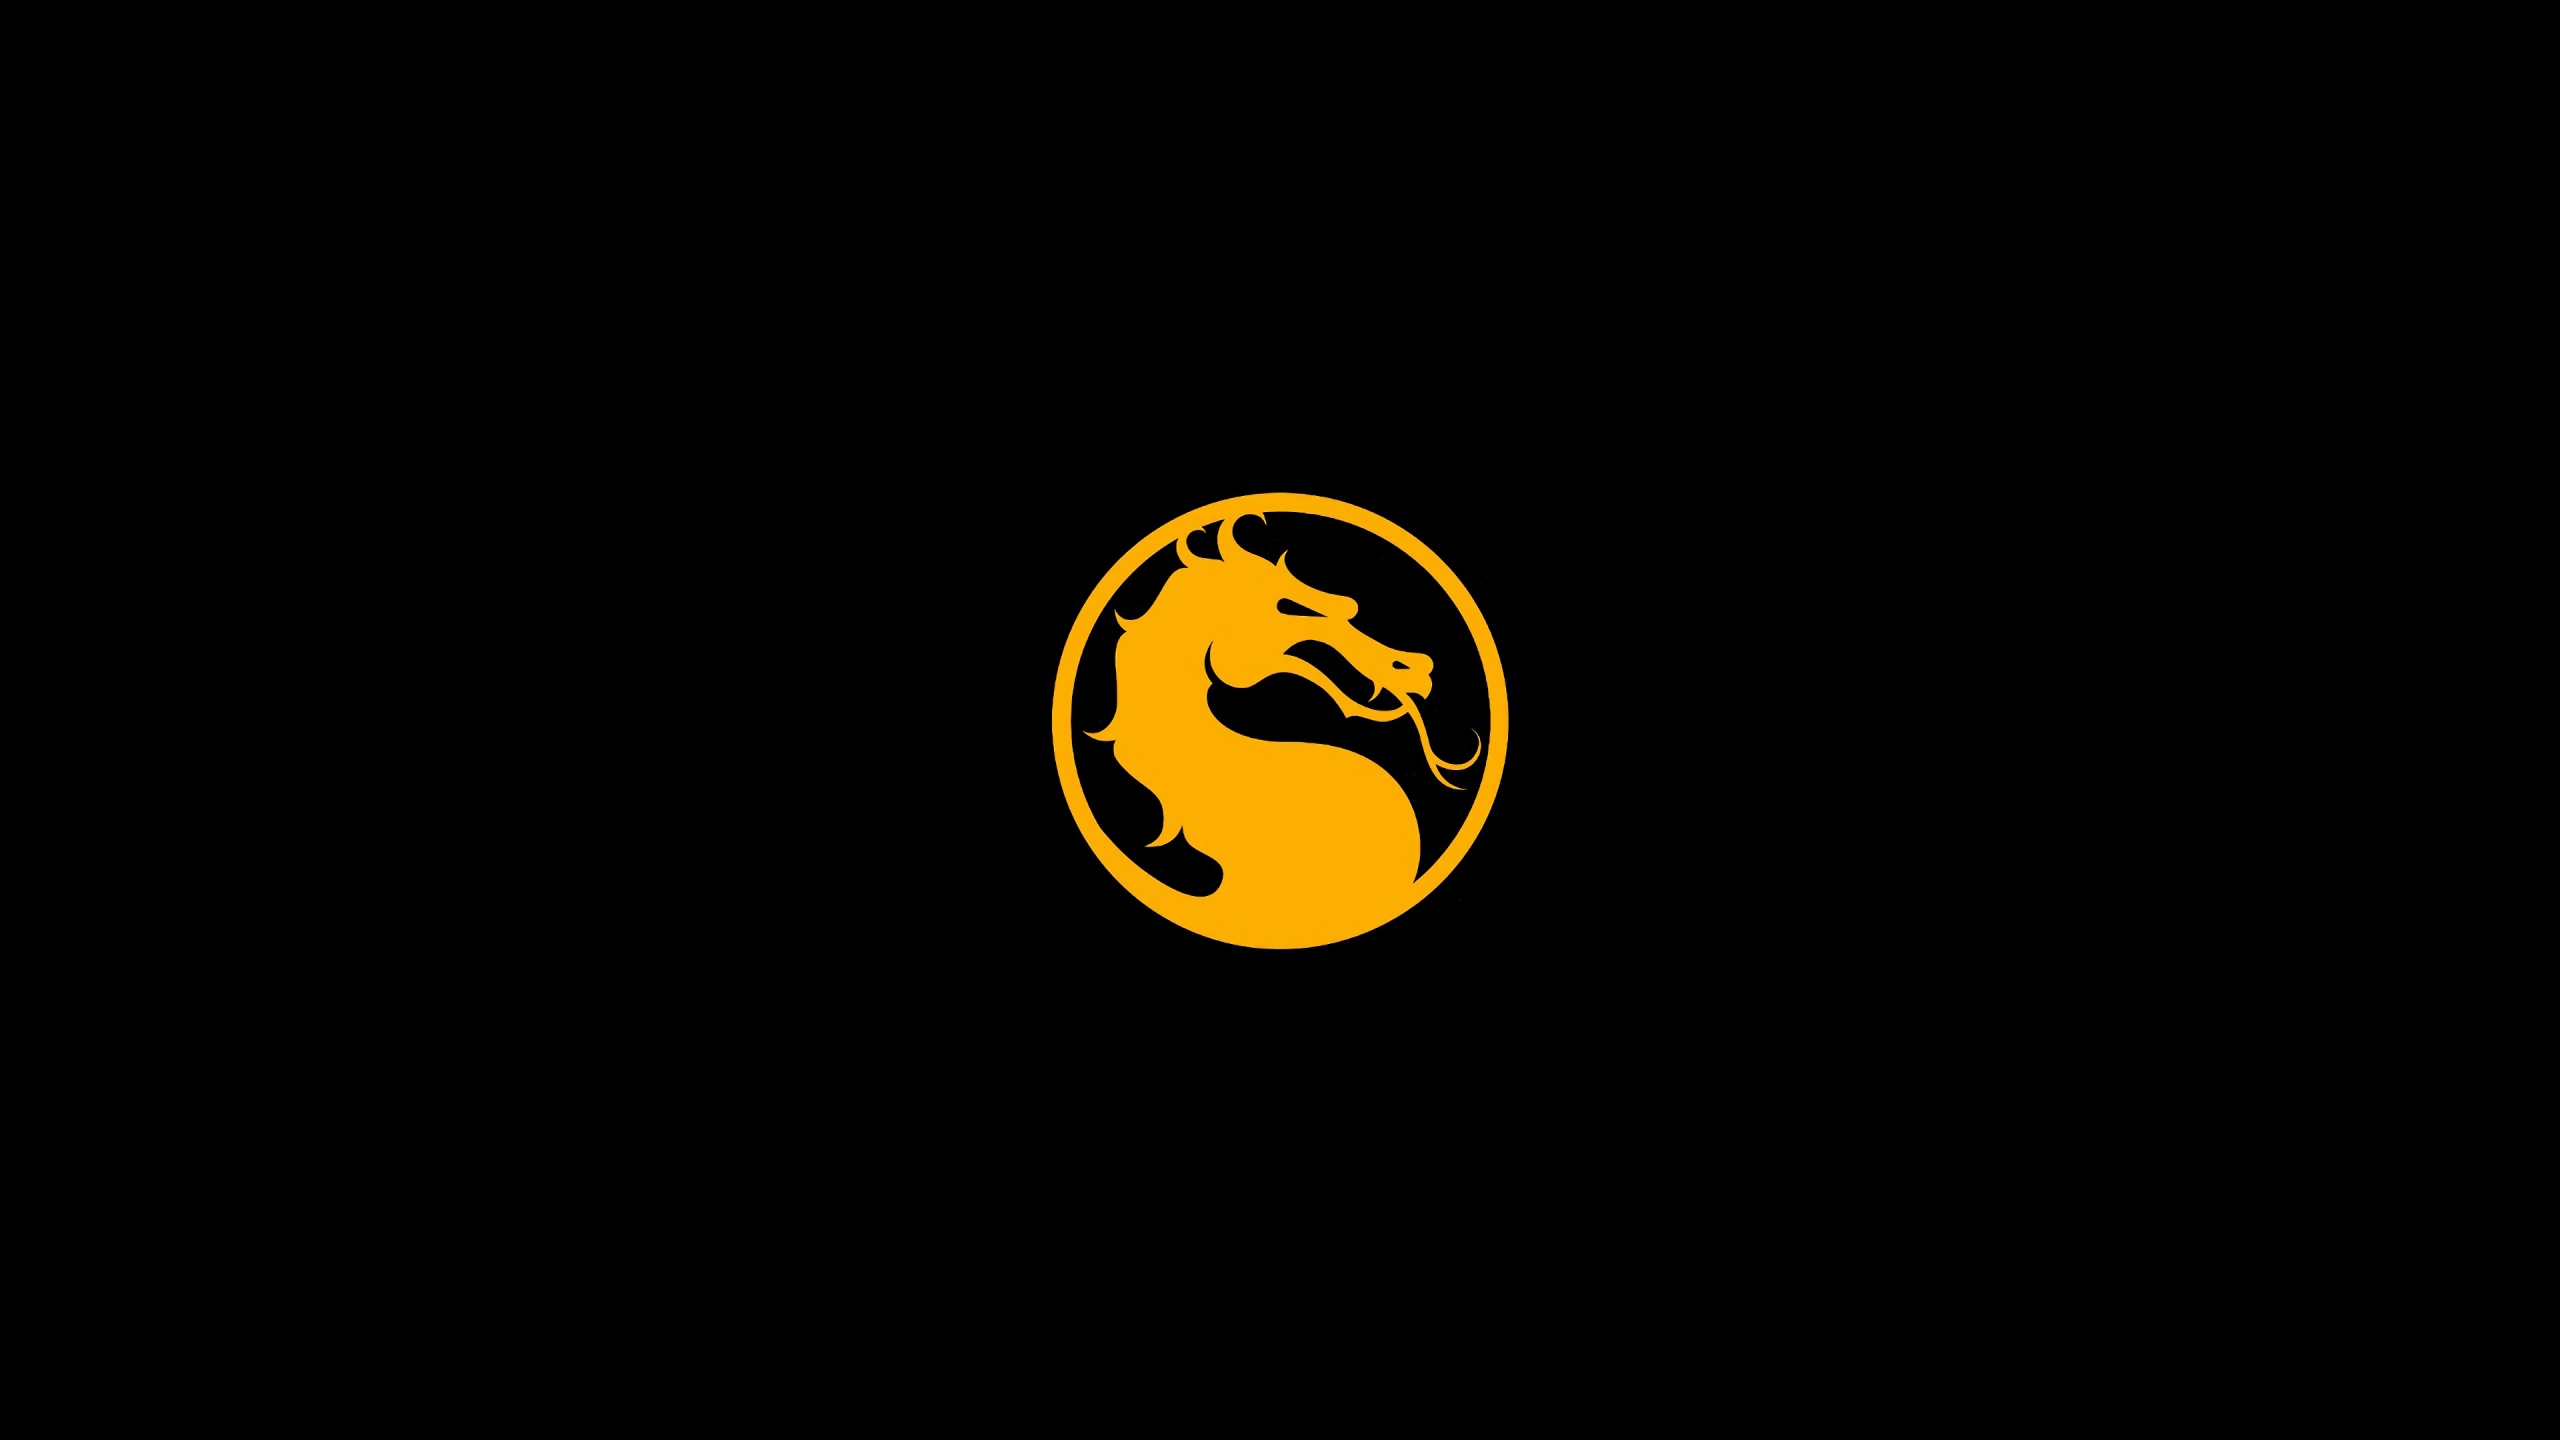 Mortal Kombat 11 Logo Dragon Wallpaper 4k Ultra HD ID:3176